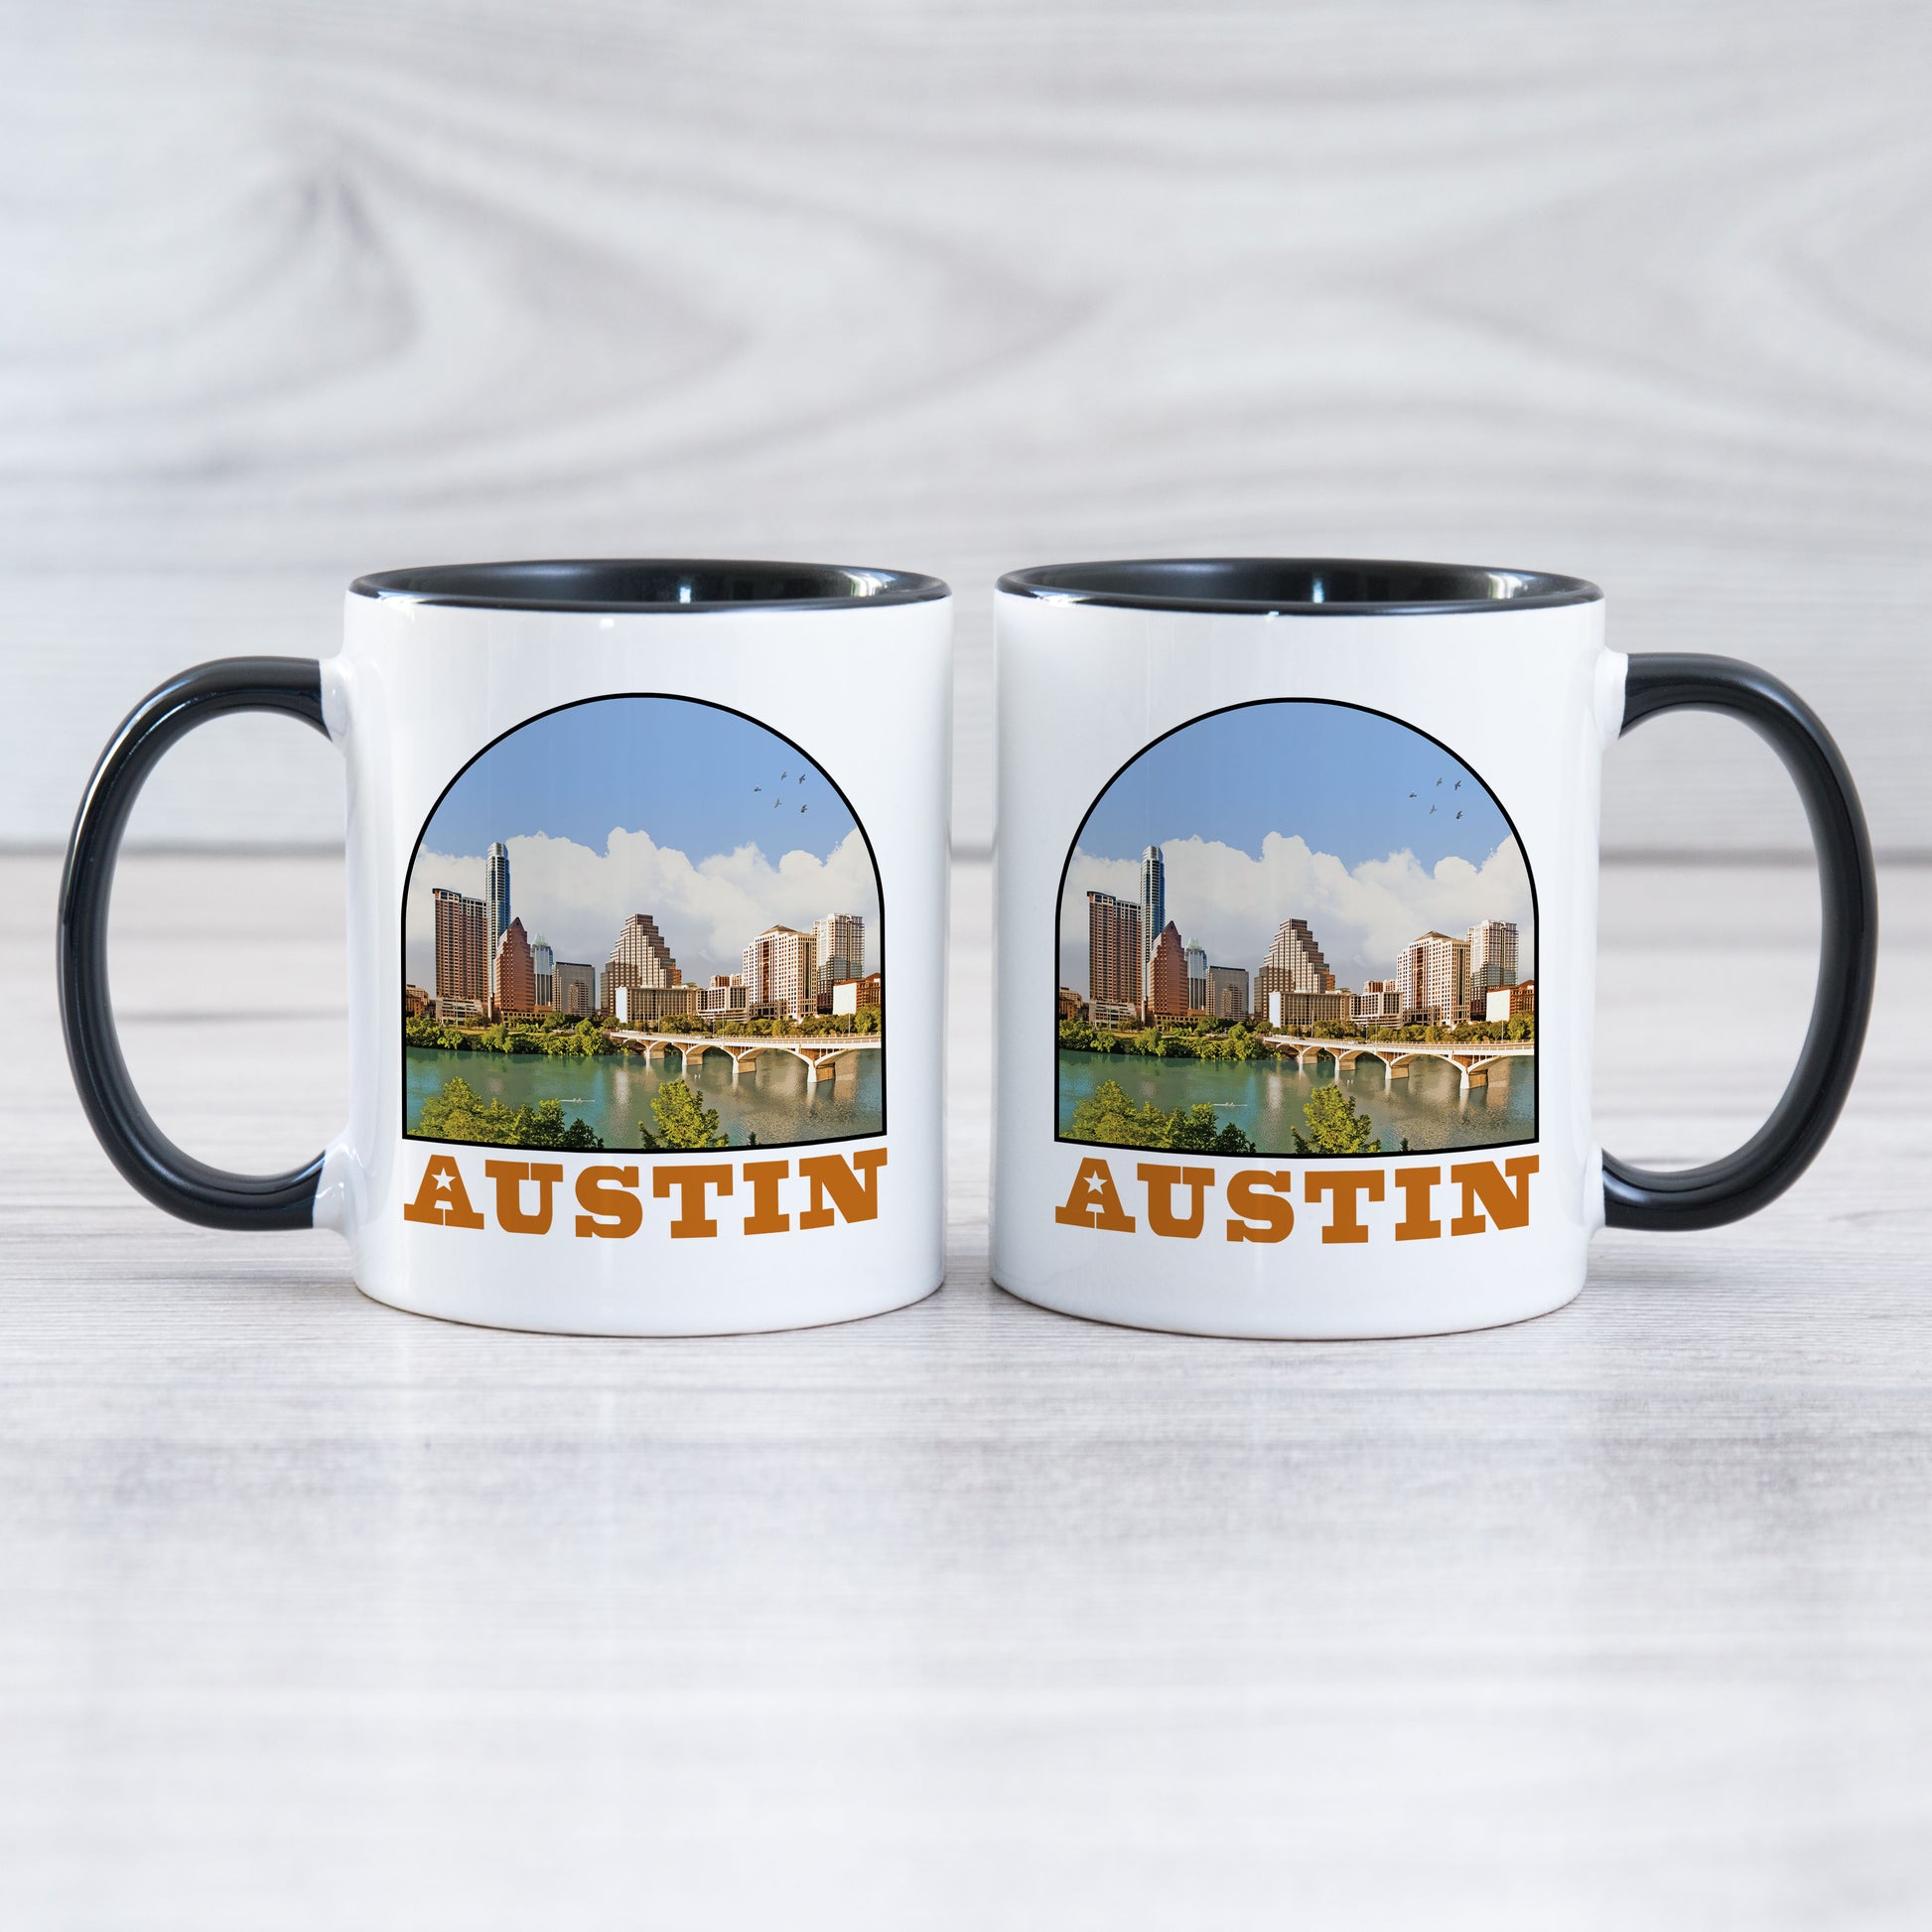 Austin - Ceramic Mug - Vintaprints